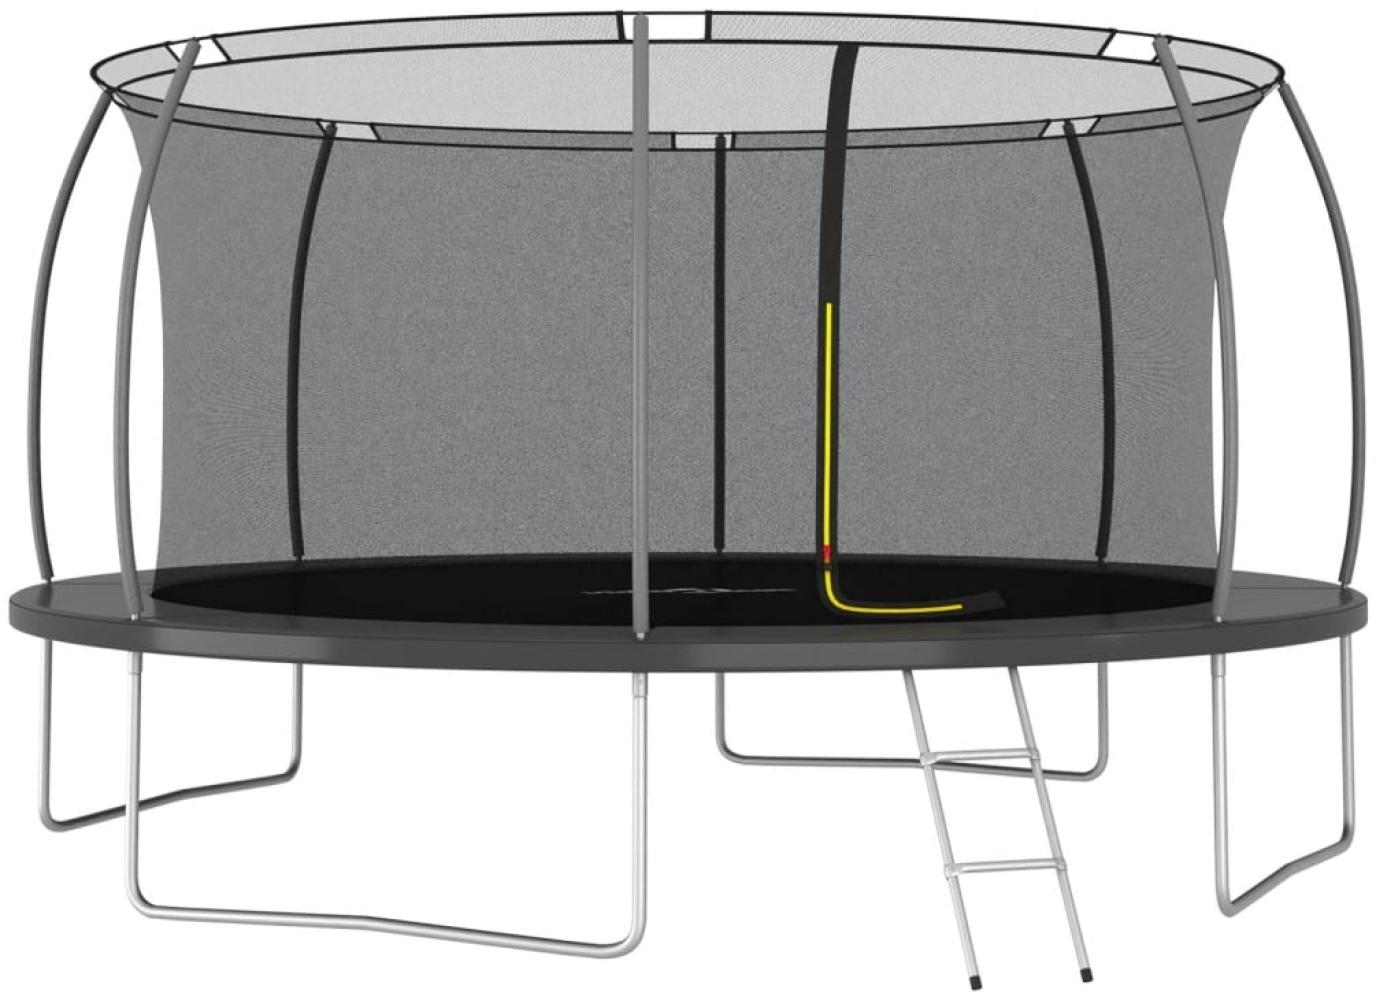 Trampolin-Set inkl. Sicherheitsnetz, Leiter und Regenschutz, Rund 150 kg, grau, 460x80 cm Bild 1